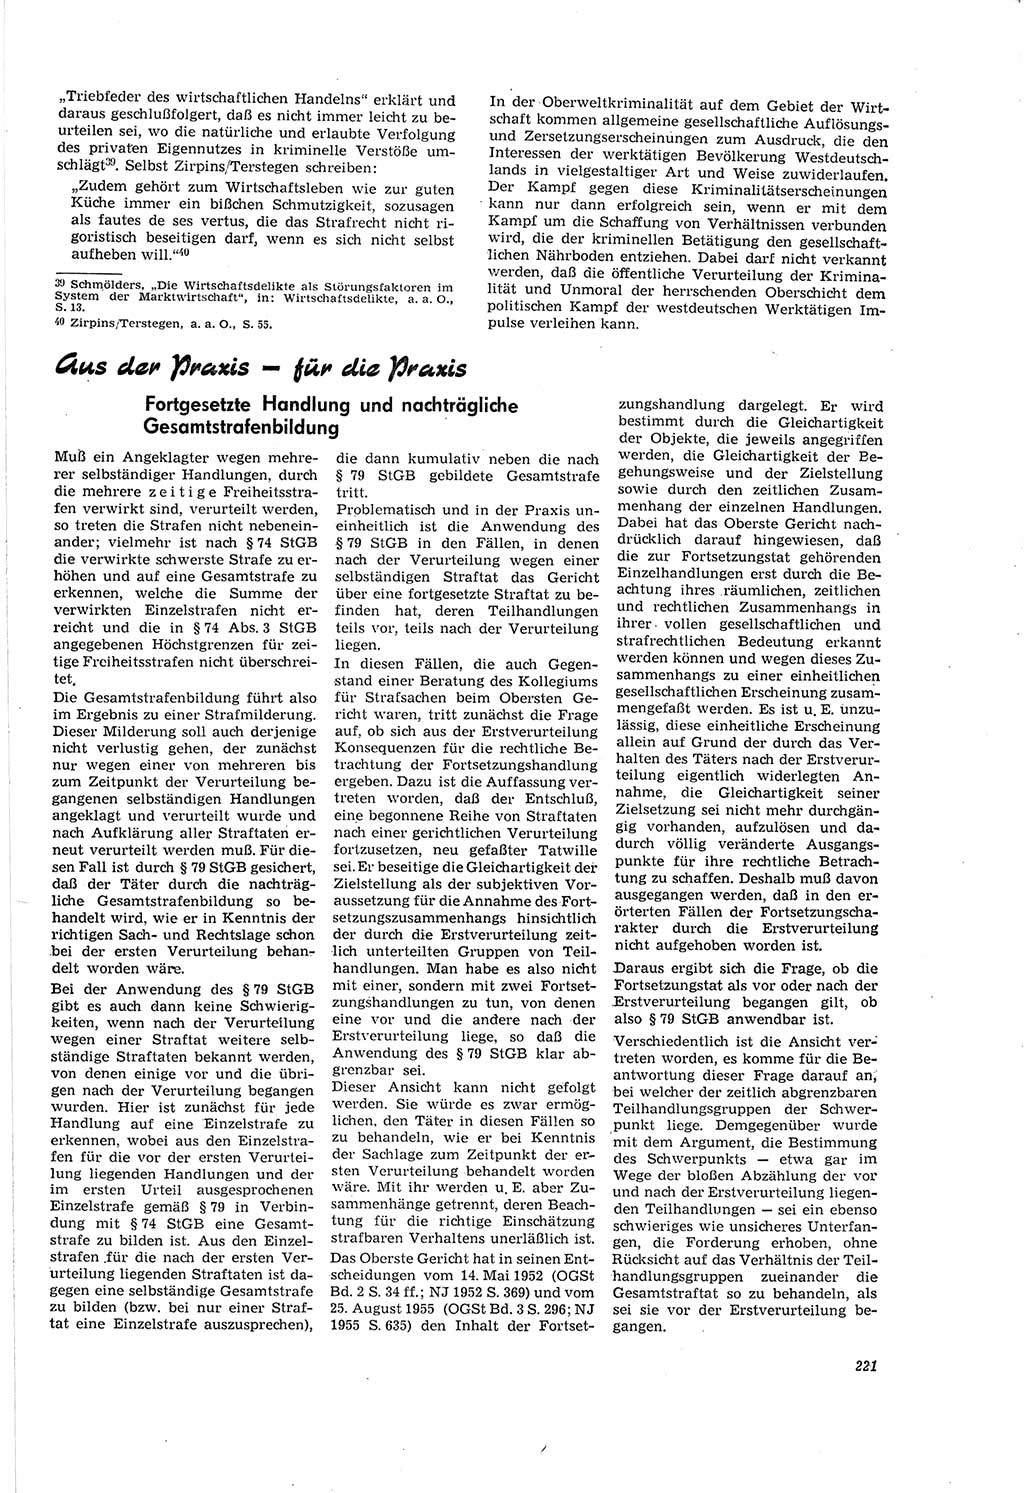 Neue Justiz (NJ), Zeitschrift für Recht und Rechtswissenschaft [Deutsche Demokratische Republik (DDR)], 20. Jahrgang 1966, Seite 221 (NJ DDR 1966, S. 221)